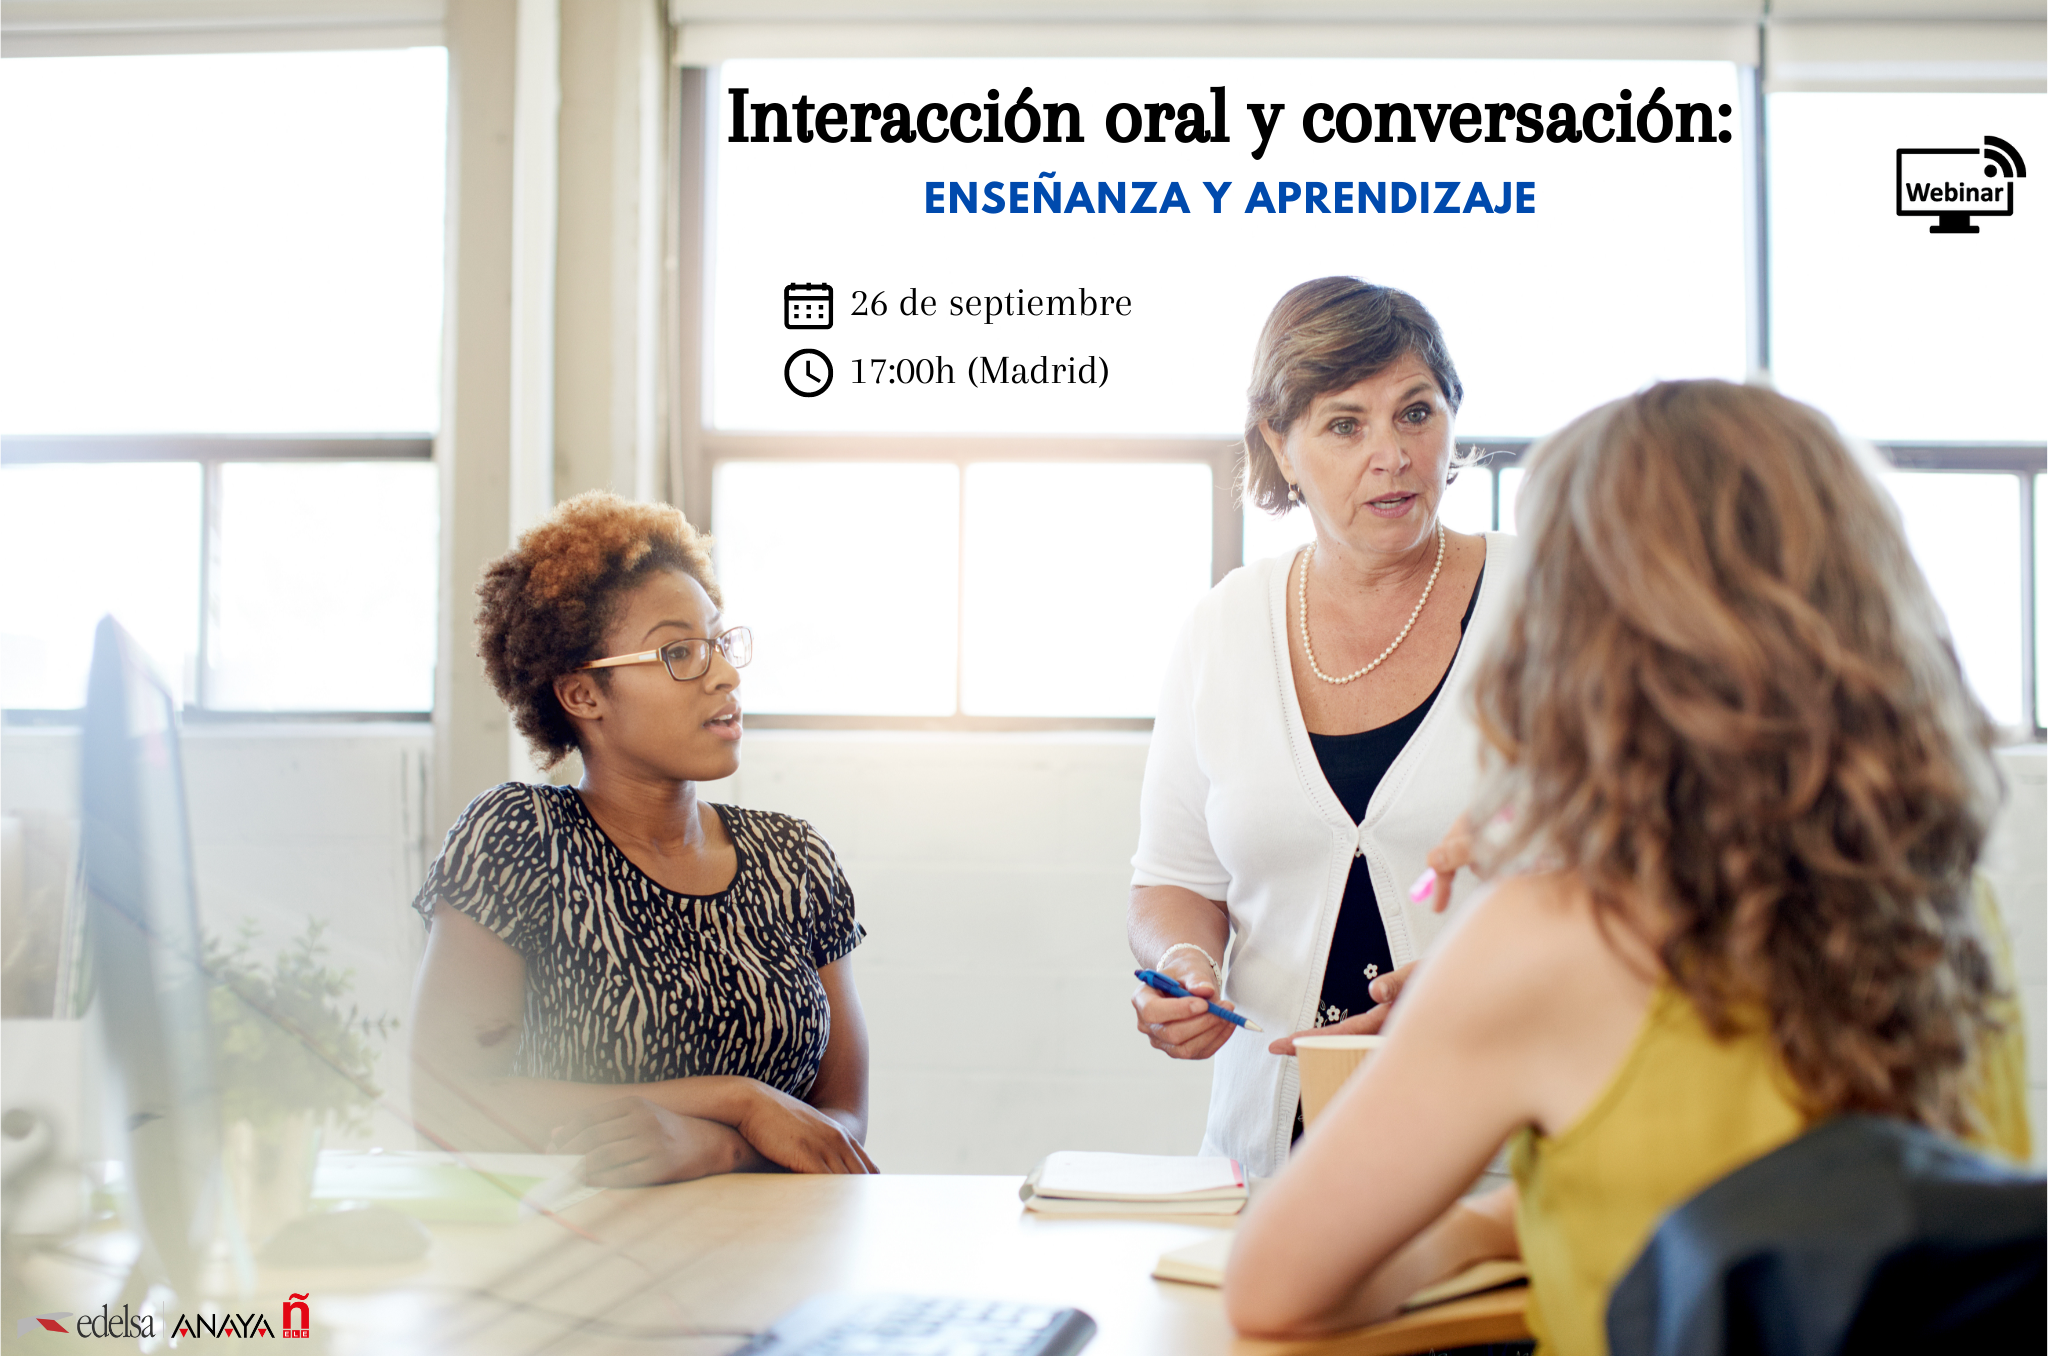 Webinar. Interacción oral y conversación: enseñanza y aprendizaje